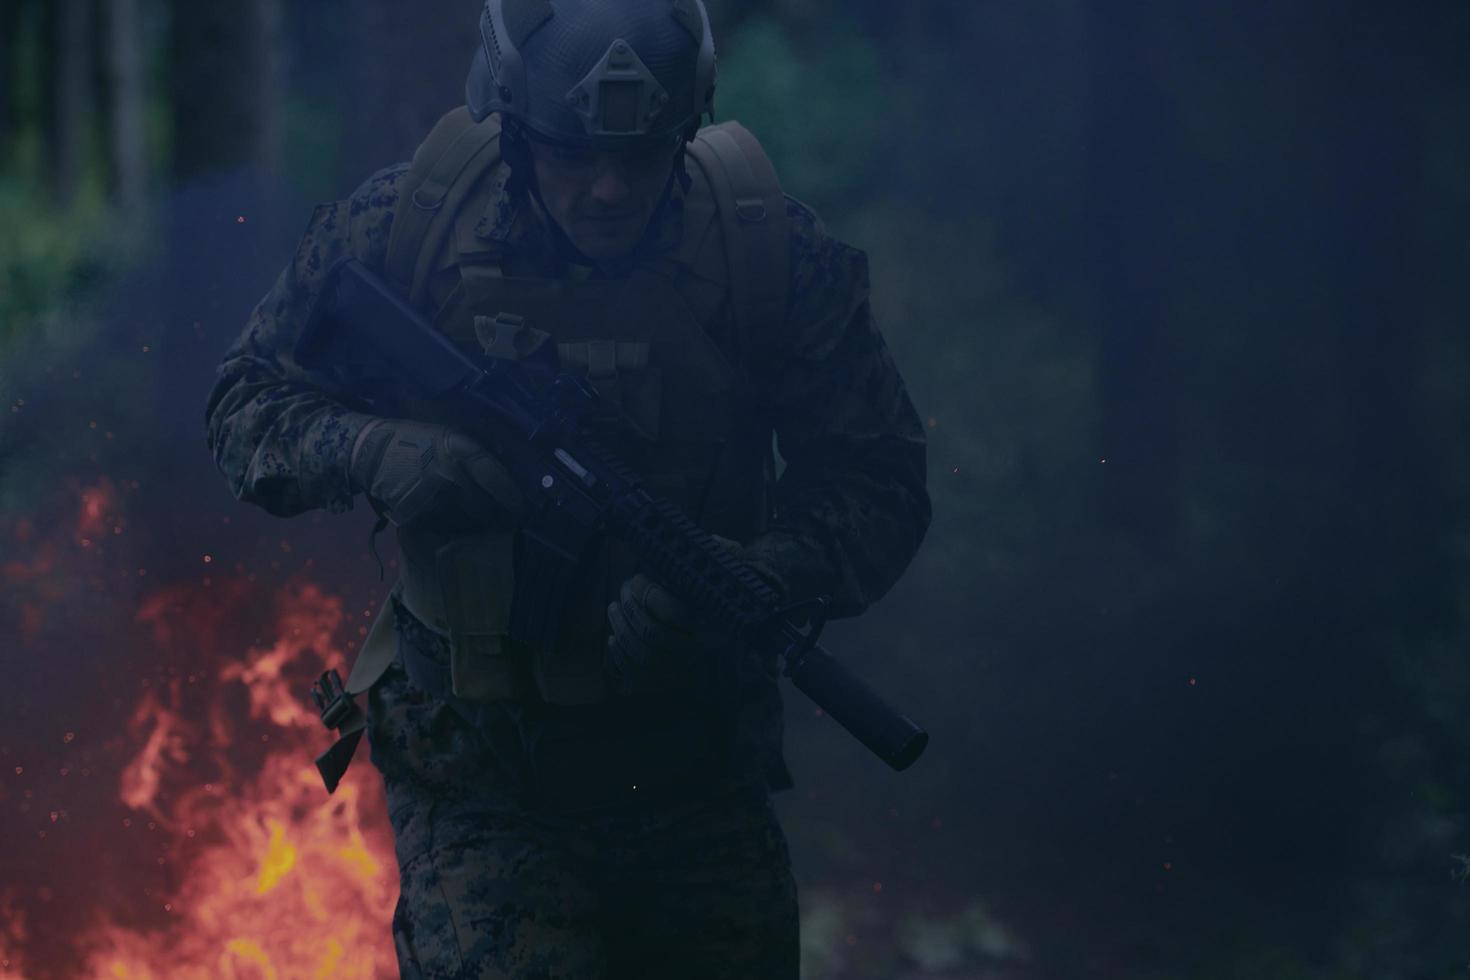 soldado en acción por la noche saltando sobre el fuego foto